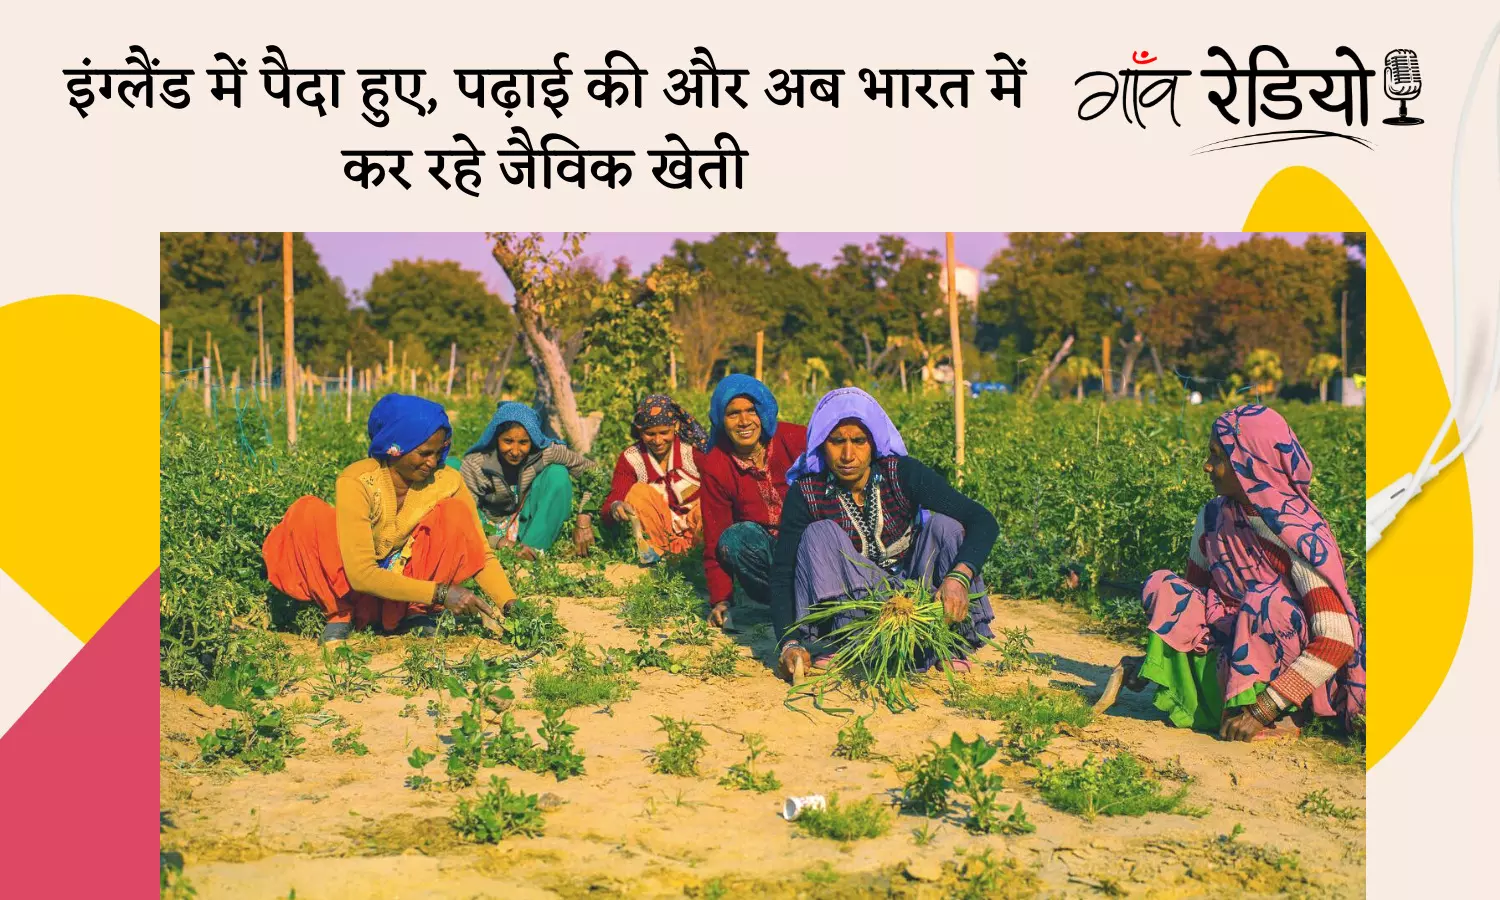 Gaon Radio: इंग्लैंड में पले-बढ़े, लेकिन अब भारत में जैविक खेती से बदल रहे किसानों की जिंदगी